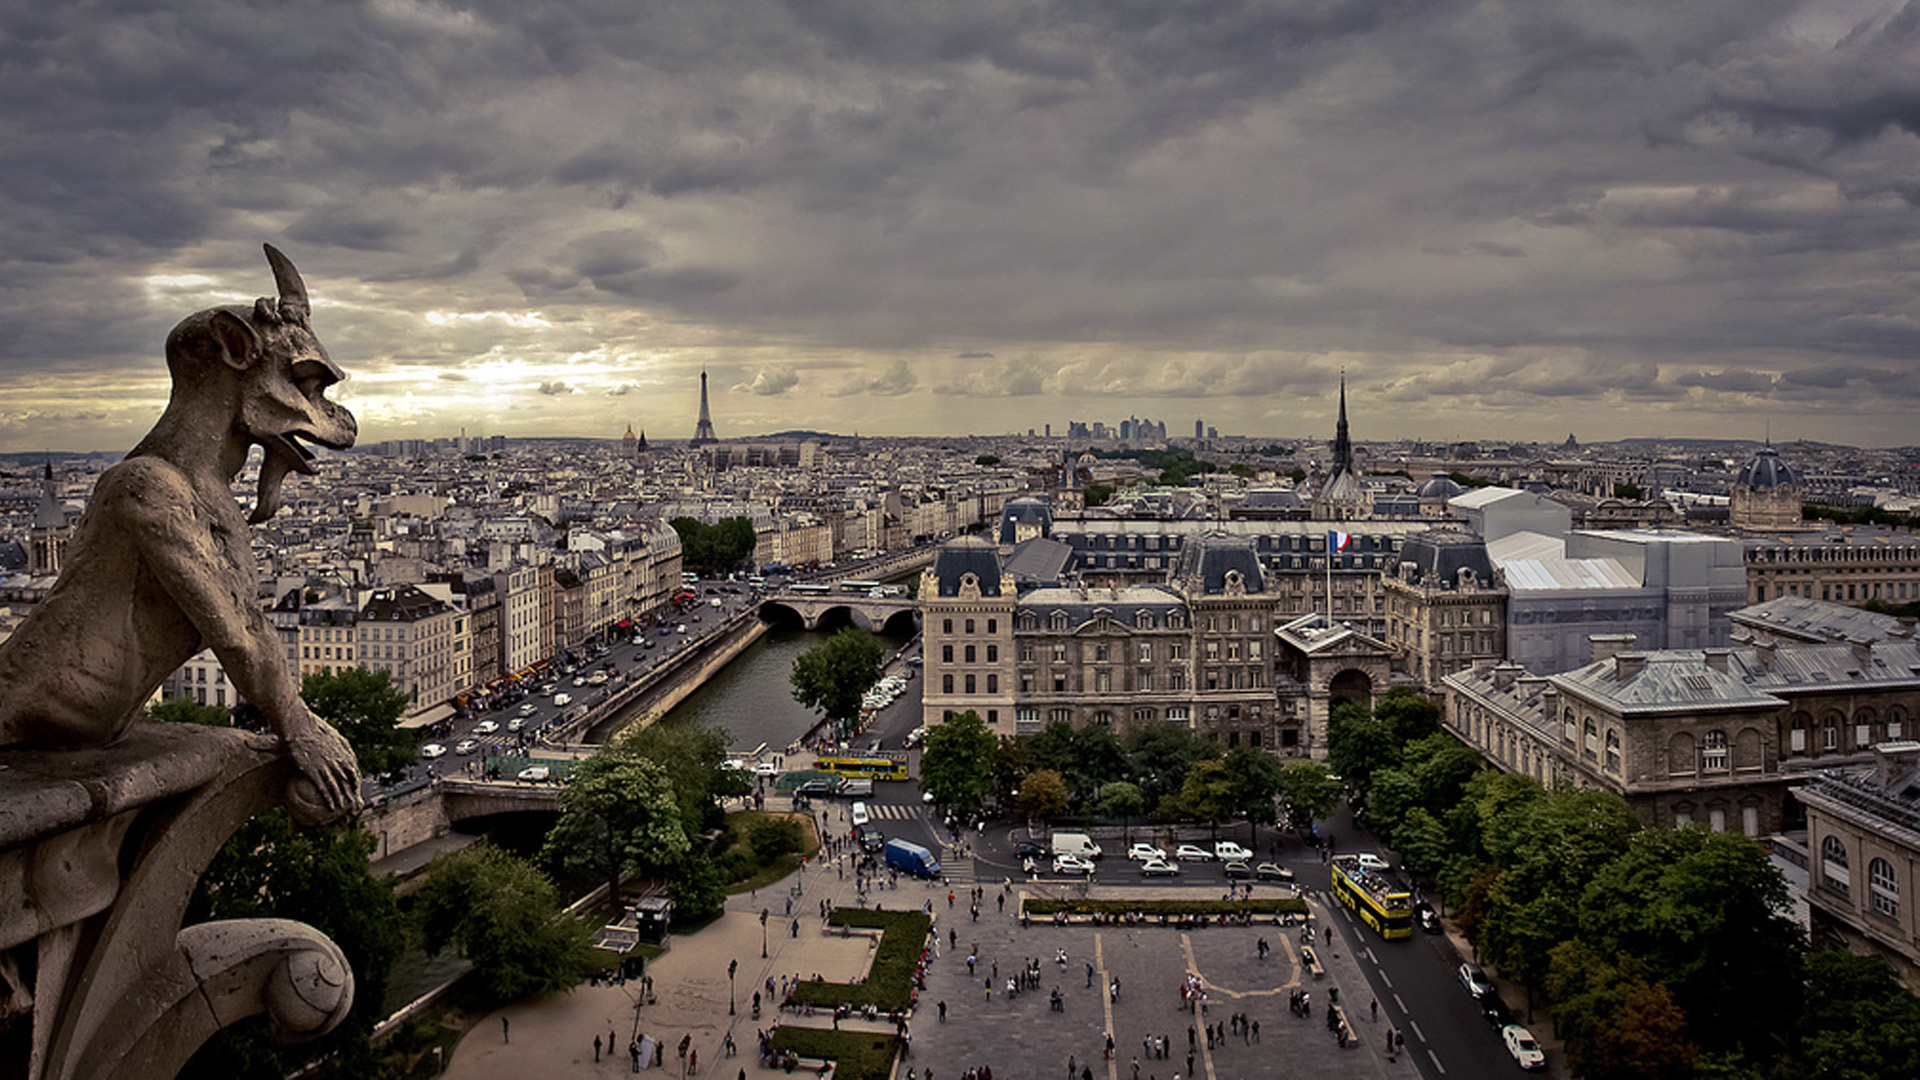 Paris: Notre-Dame de Paris, Sculpture, Urban design, Cityscape. 1920x1080 Full HD Wallpaper.